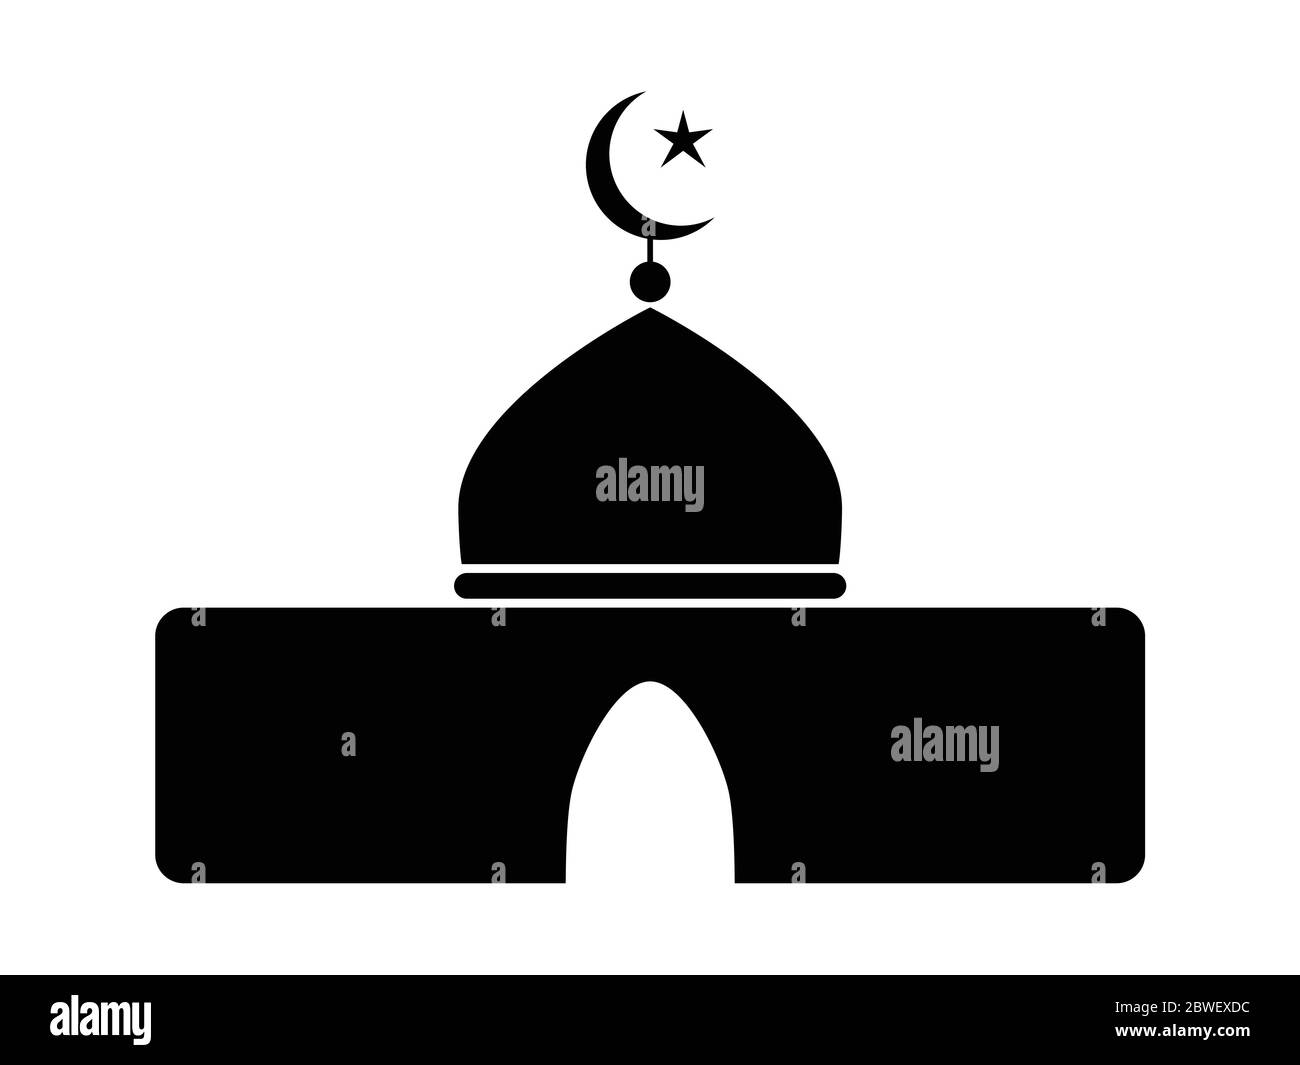 Symbol Der Islamischen Moschee. Schwarz-weißes Piktogramm, das einfache muslimische Kultstätte darstellt. EPS-Vektor Stock Vektor